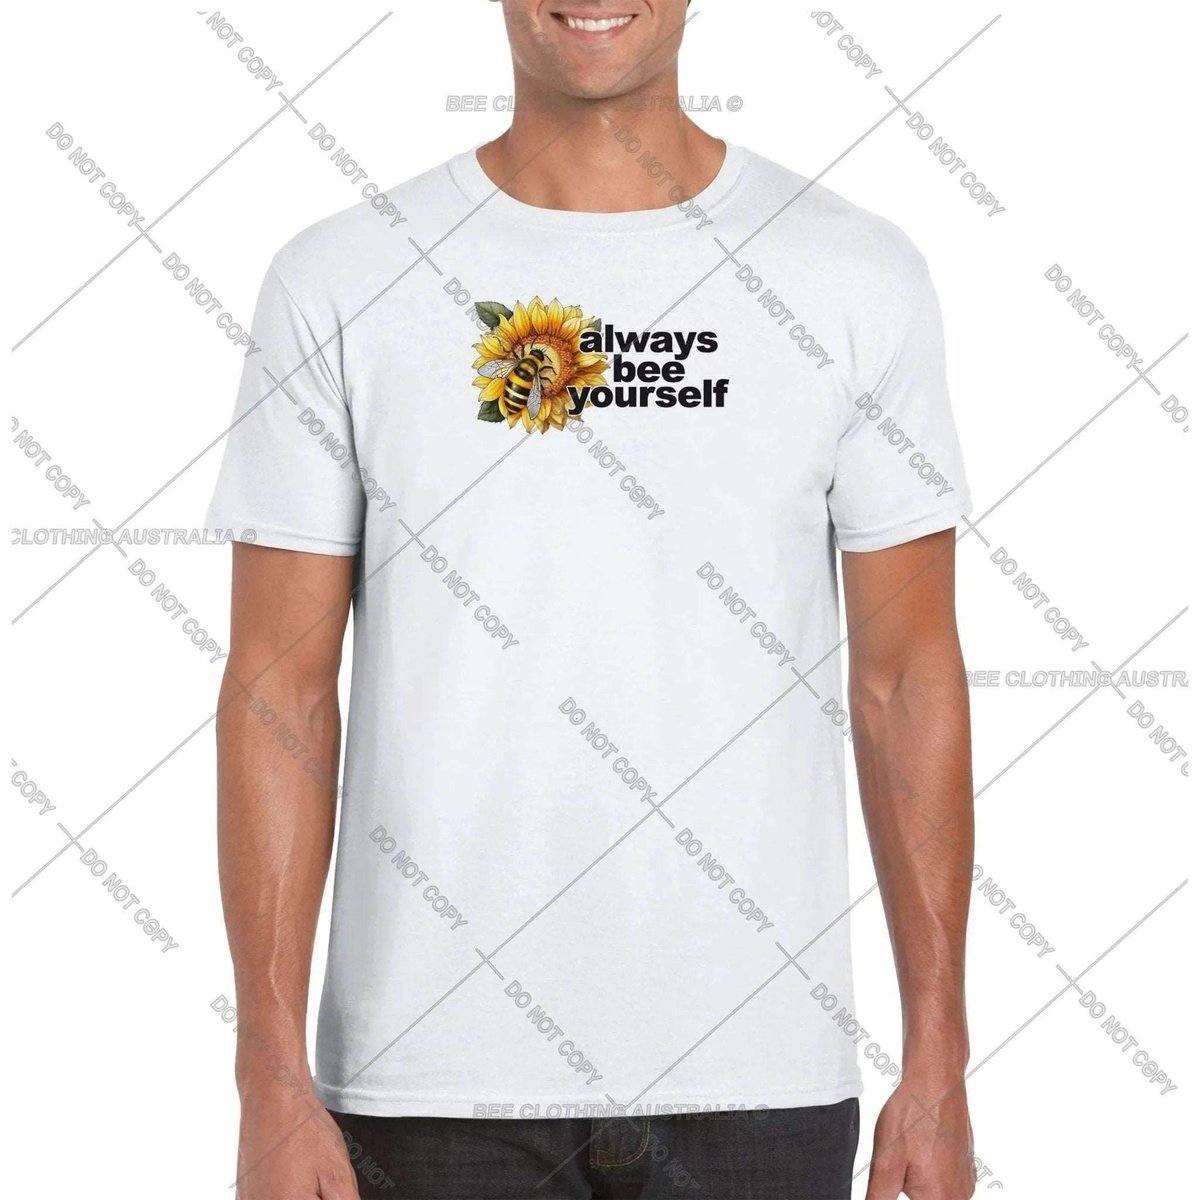 Always bee yourself T-Shirt Australia Online Color